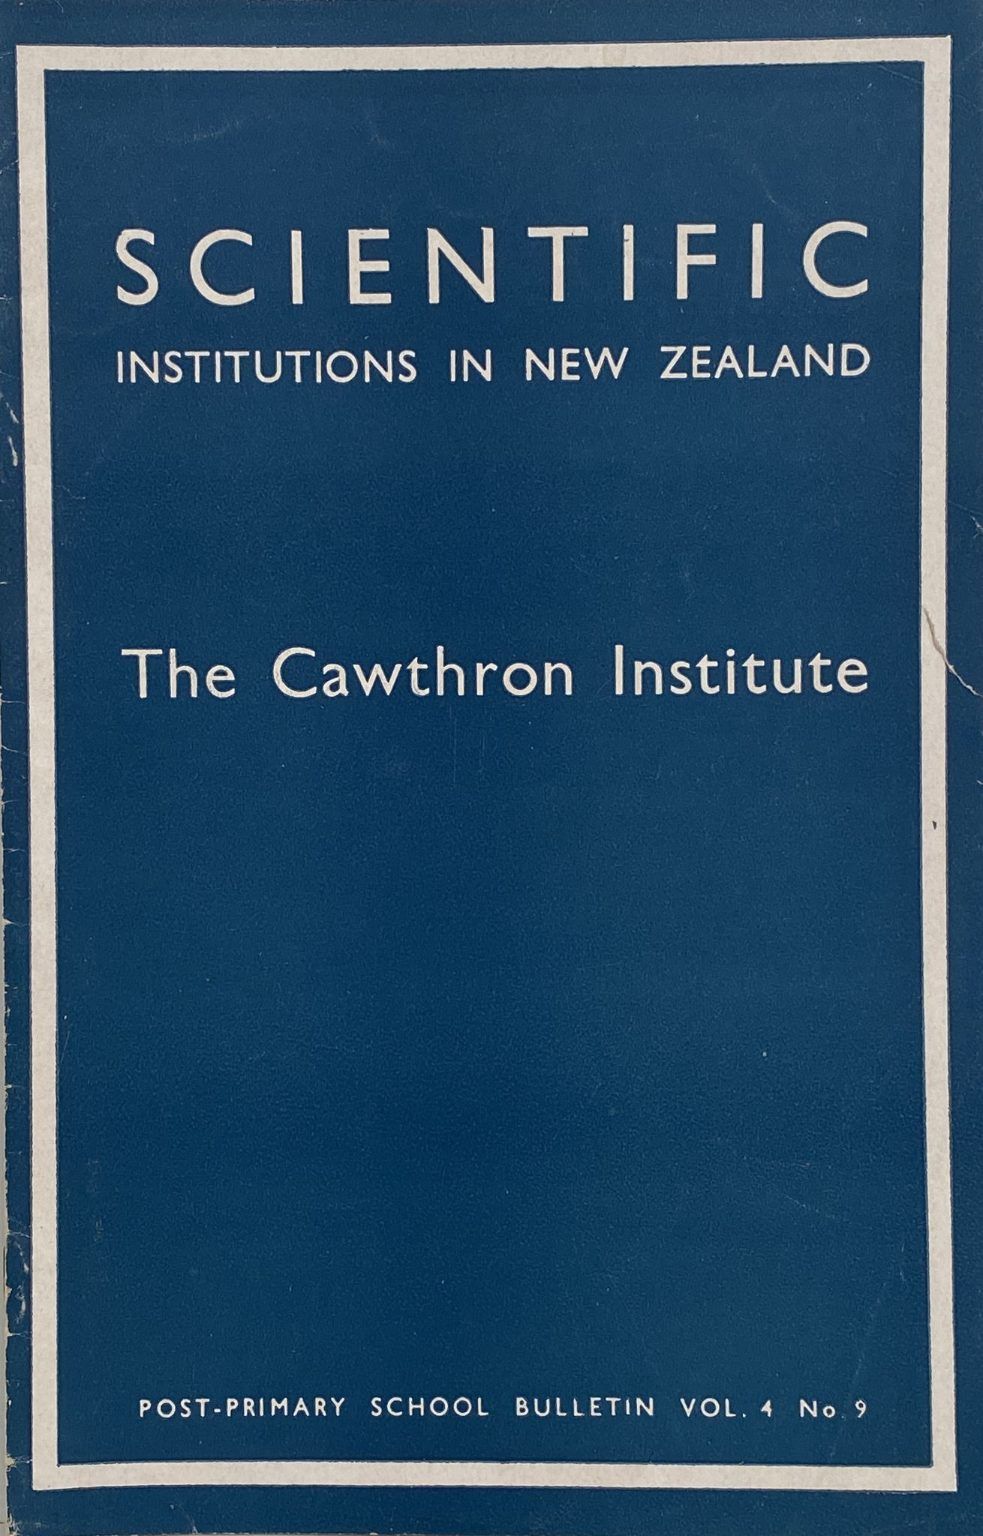 SCIENTIFIC INSTITUTIONS IN NEW ZEALAND: The Cawthron Institute